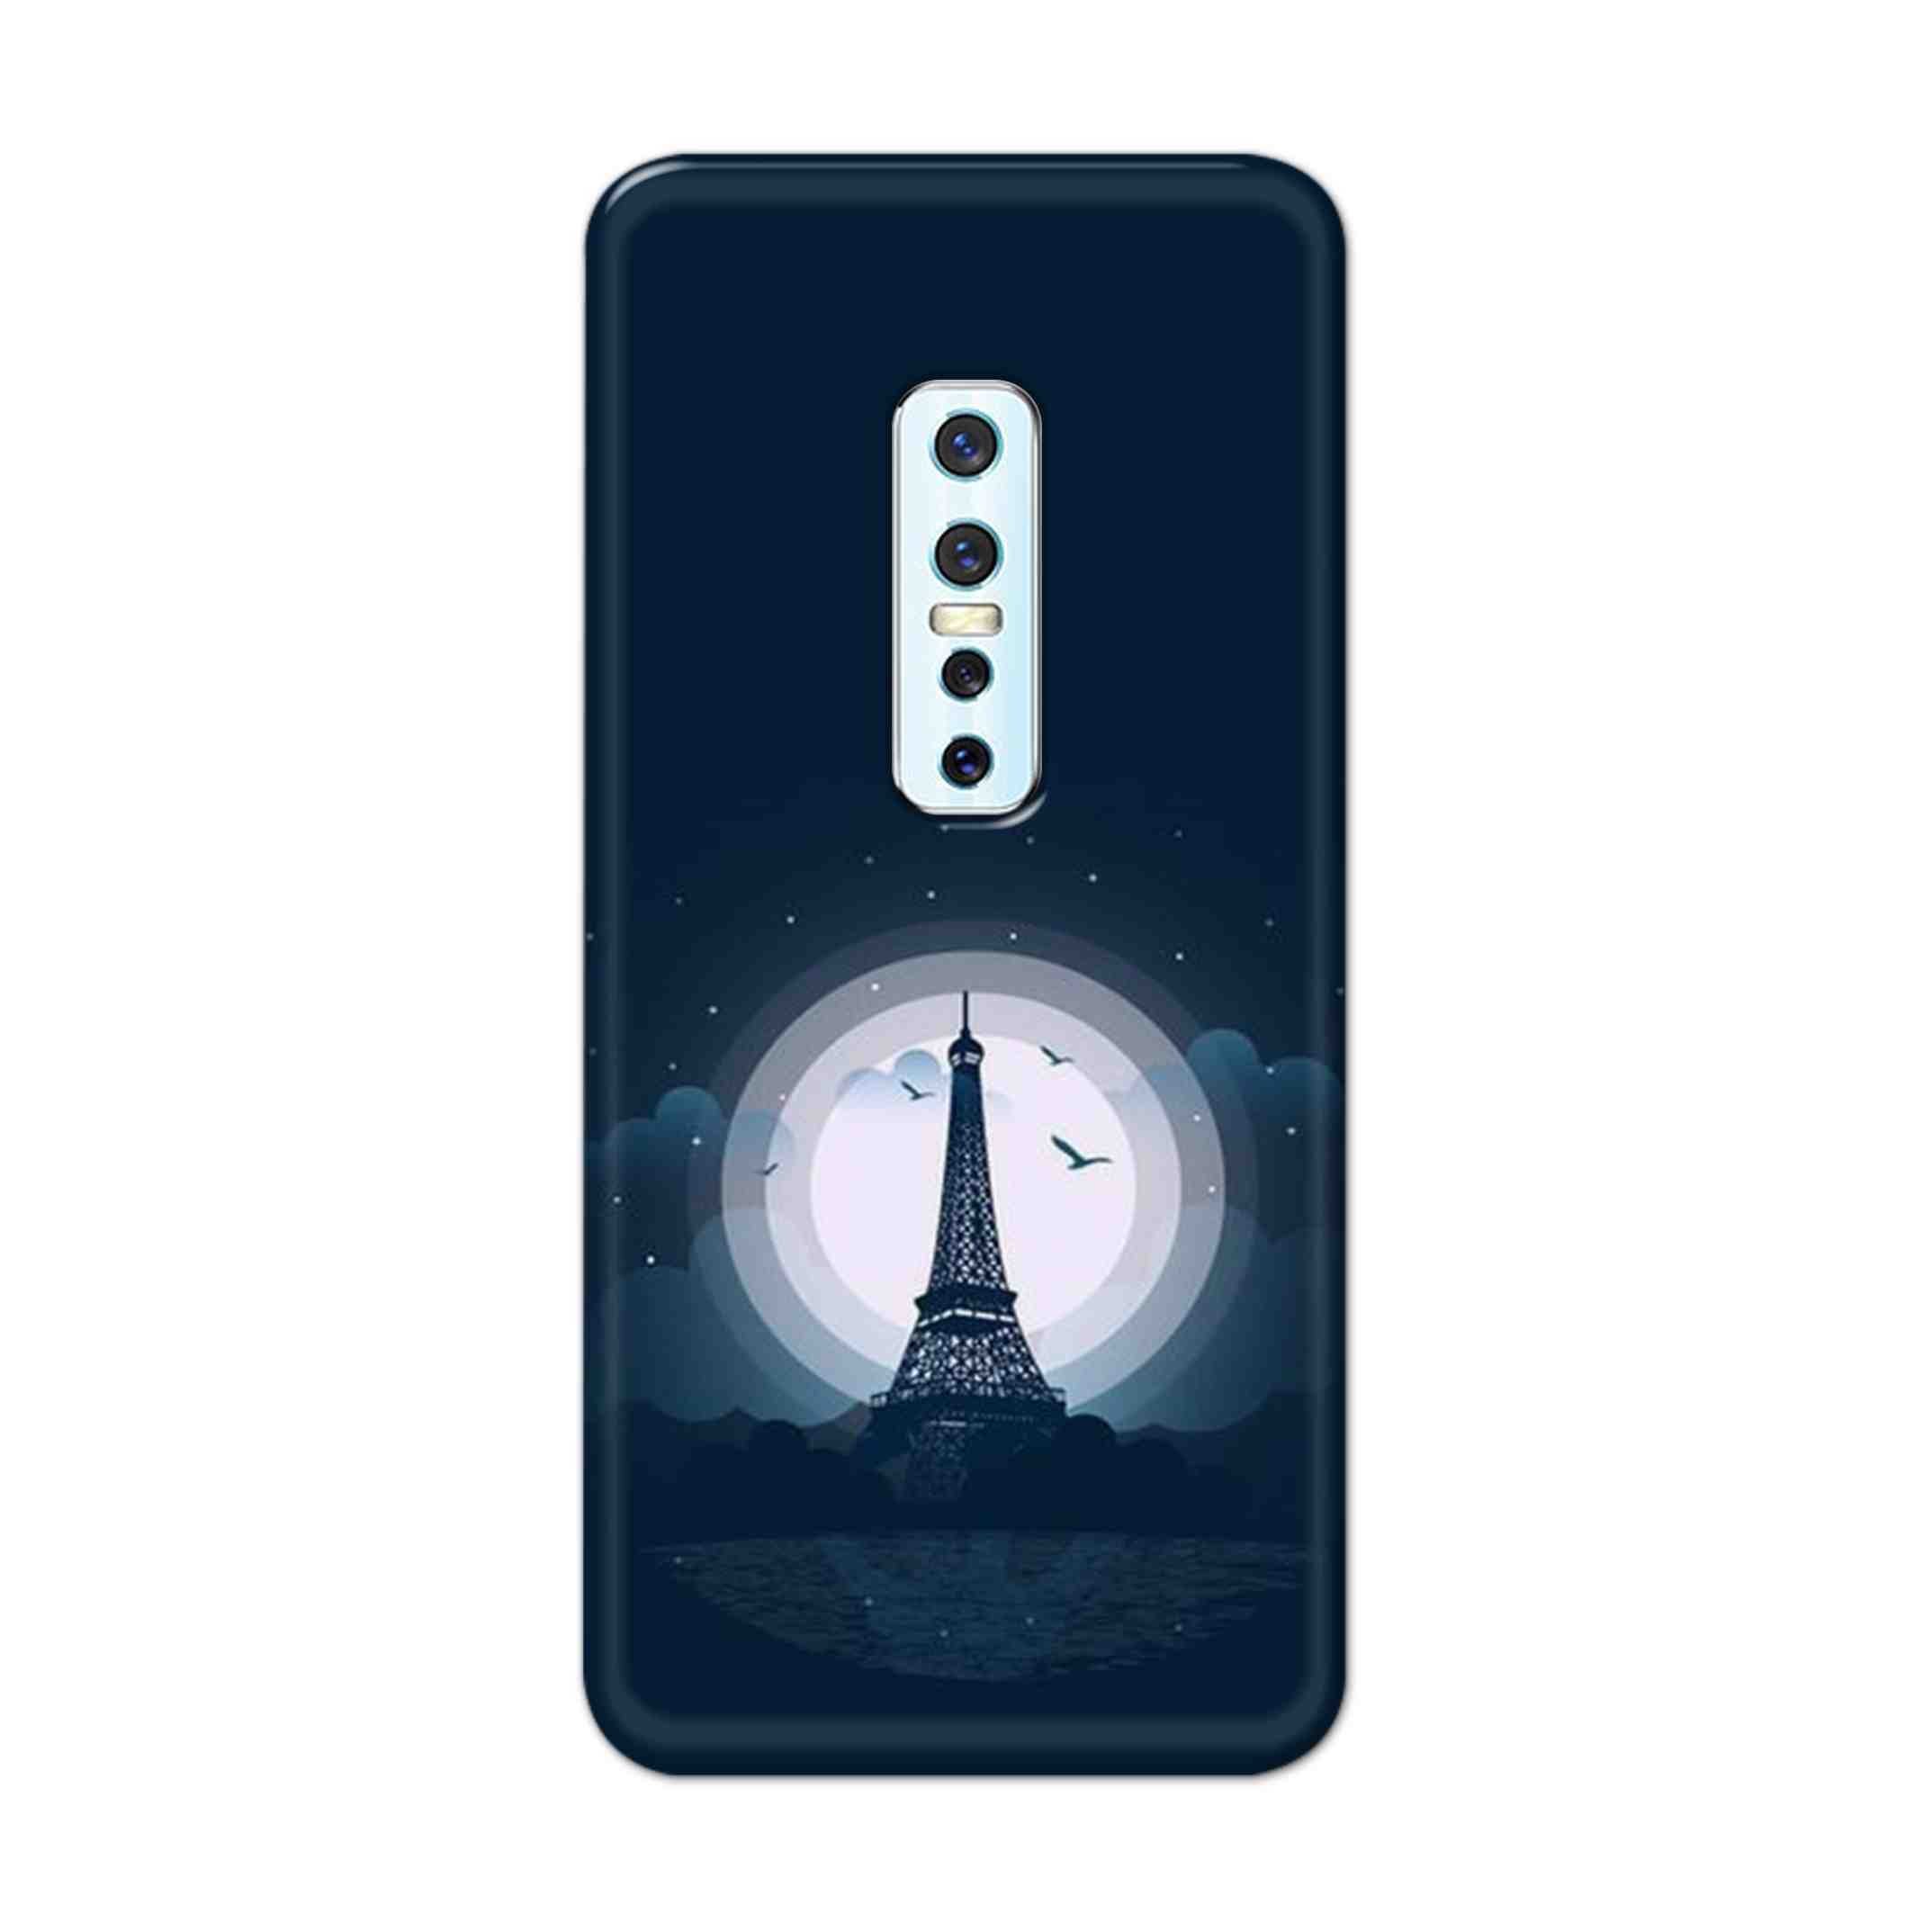 Buy Paris Eiffel Tower Hard Back Mobile Phone Case Cover For Vivo V17 Pro Online